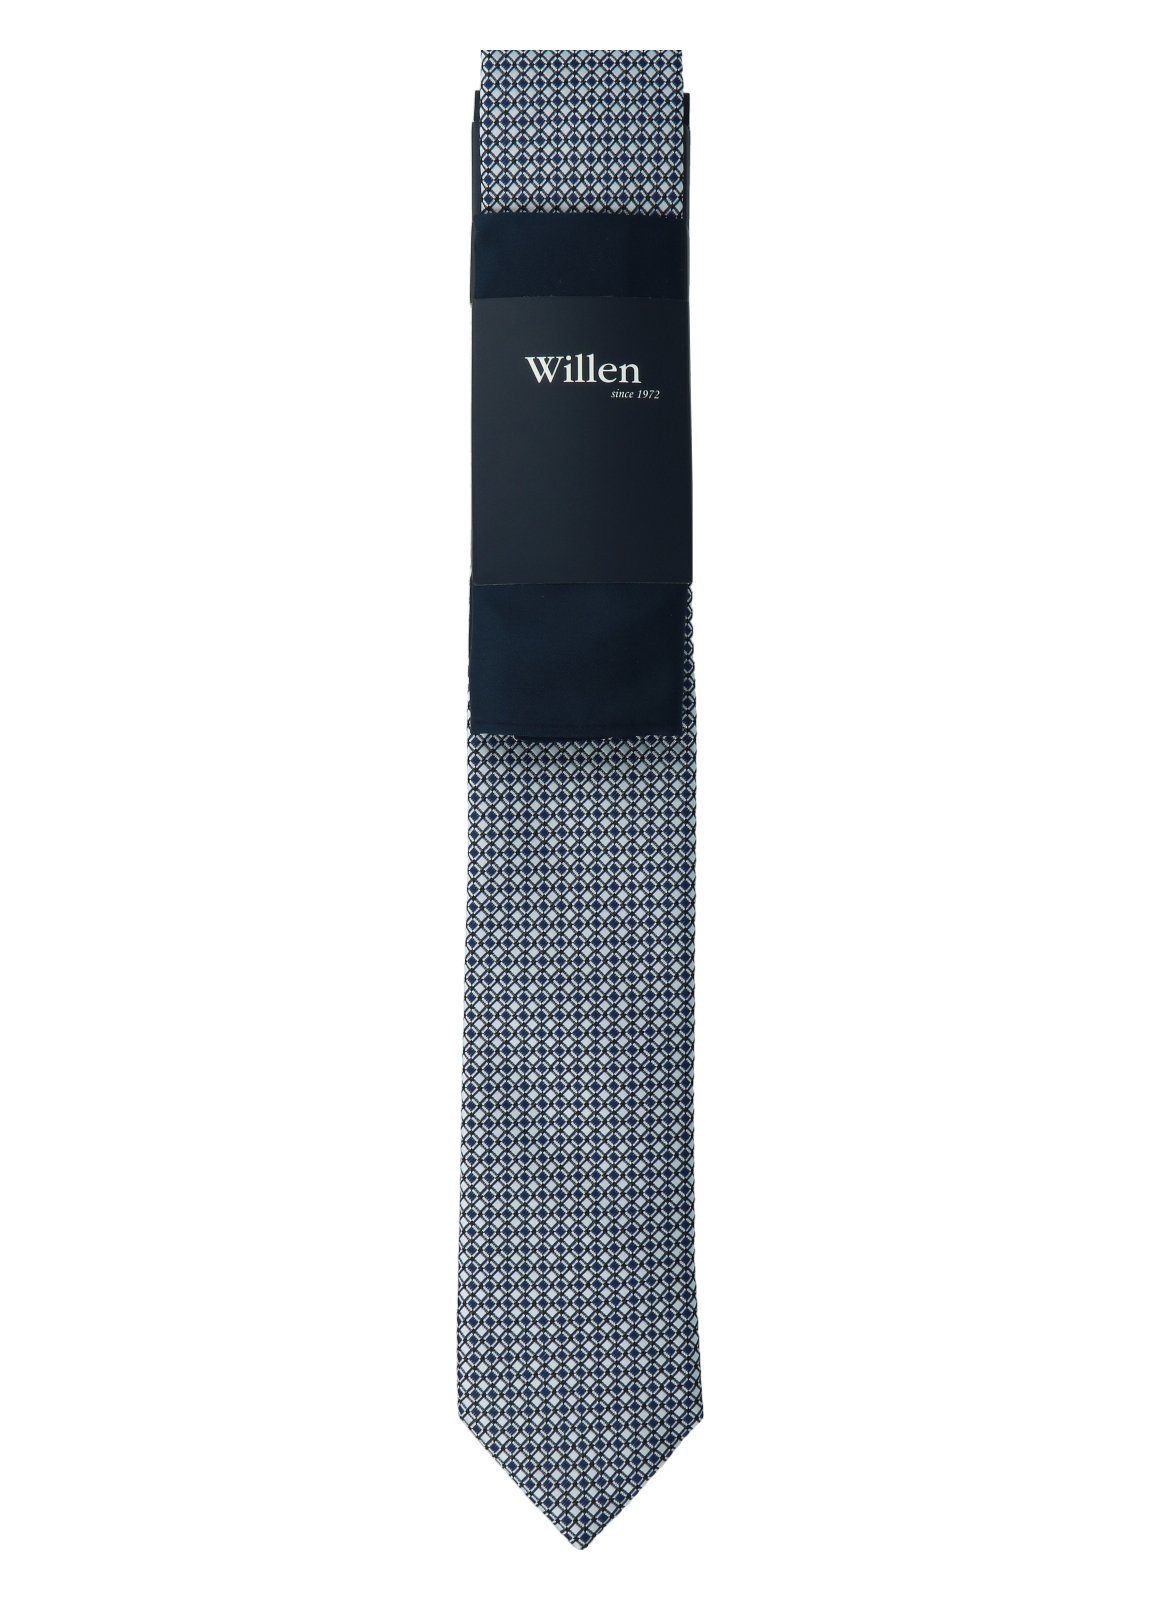 WILLEN Krawatte marine